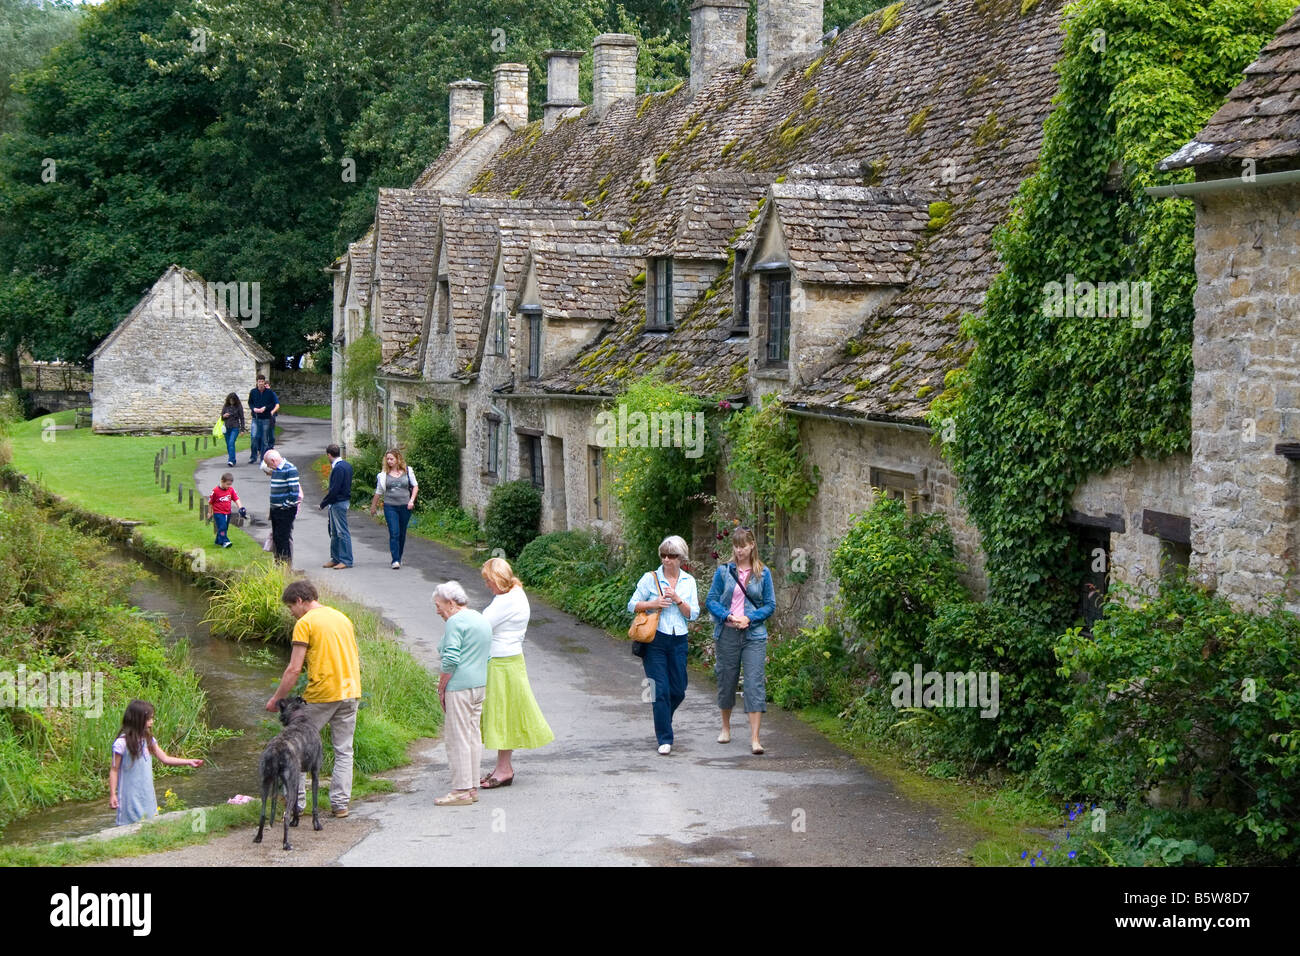 Cotswold stone cottages dans le village de Bibury Gloucestershire Angleterre Banque D'Images